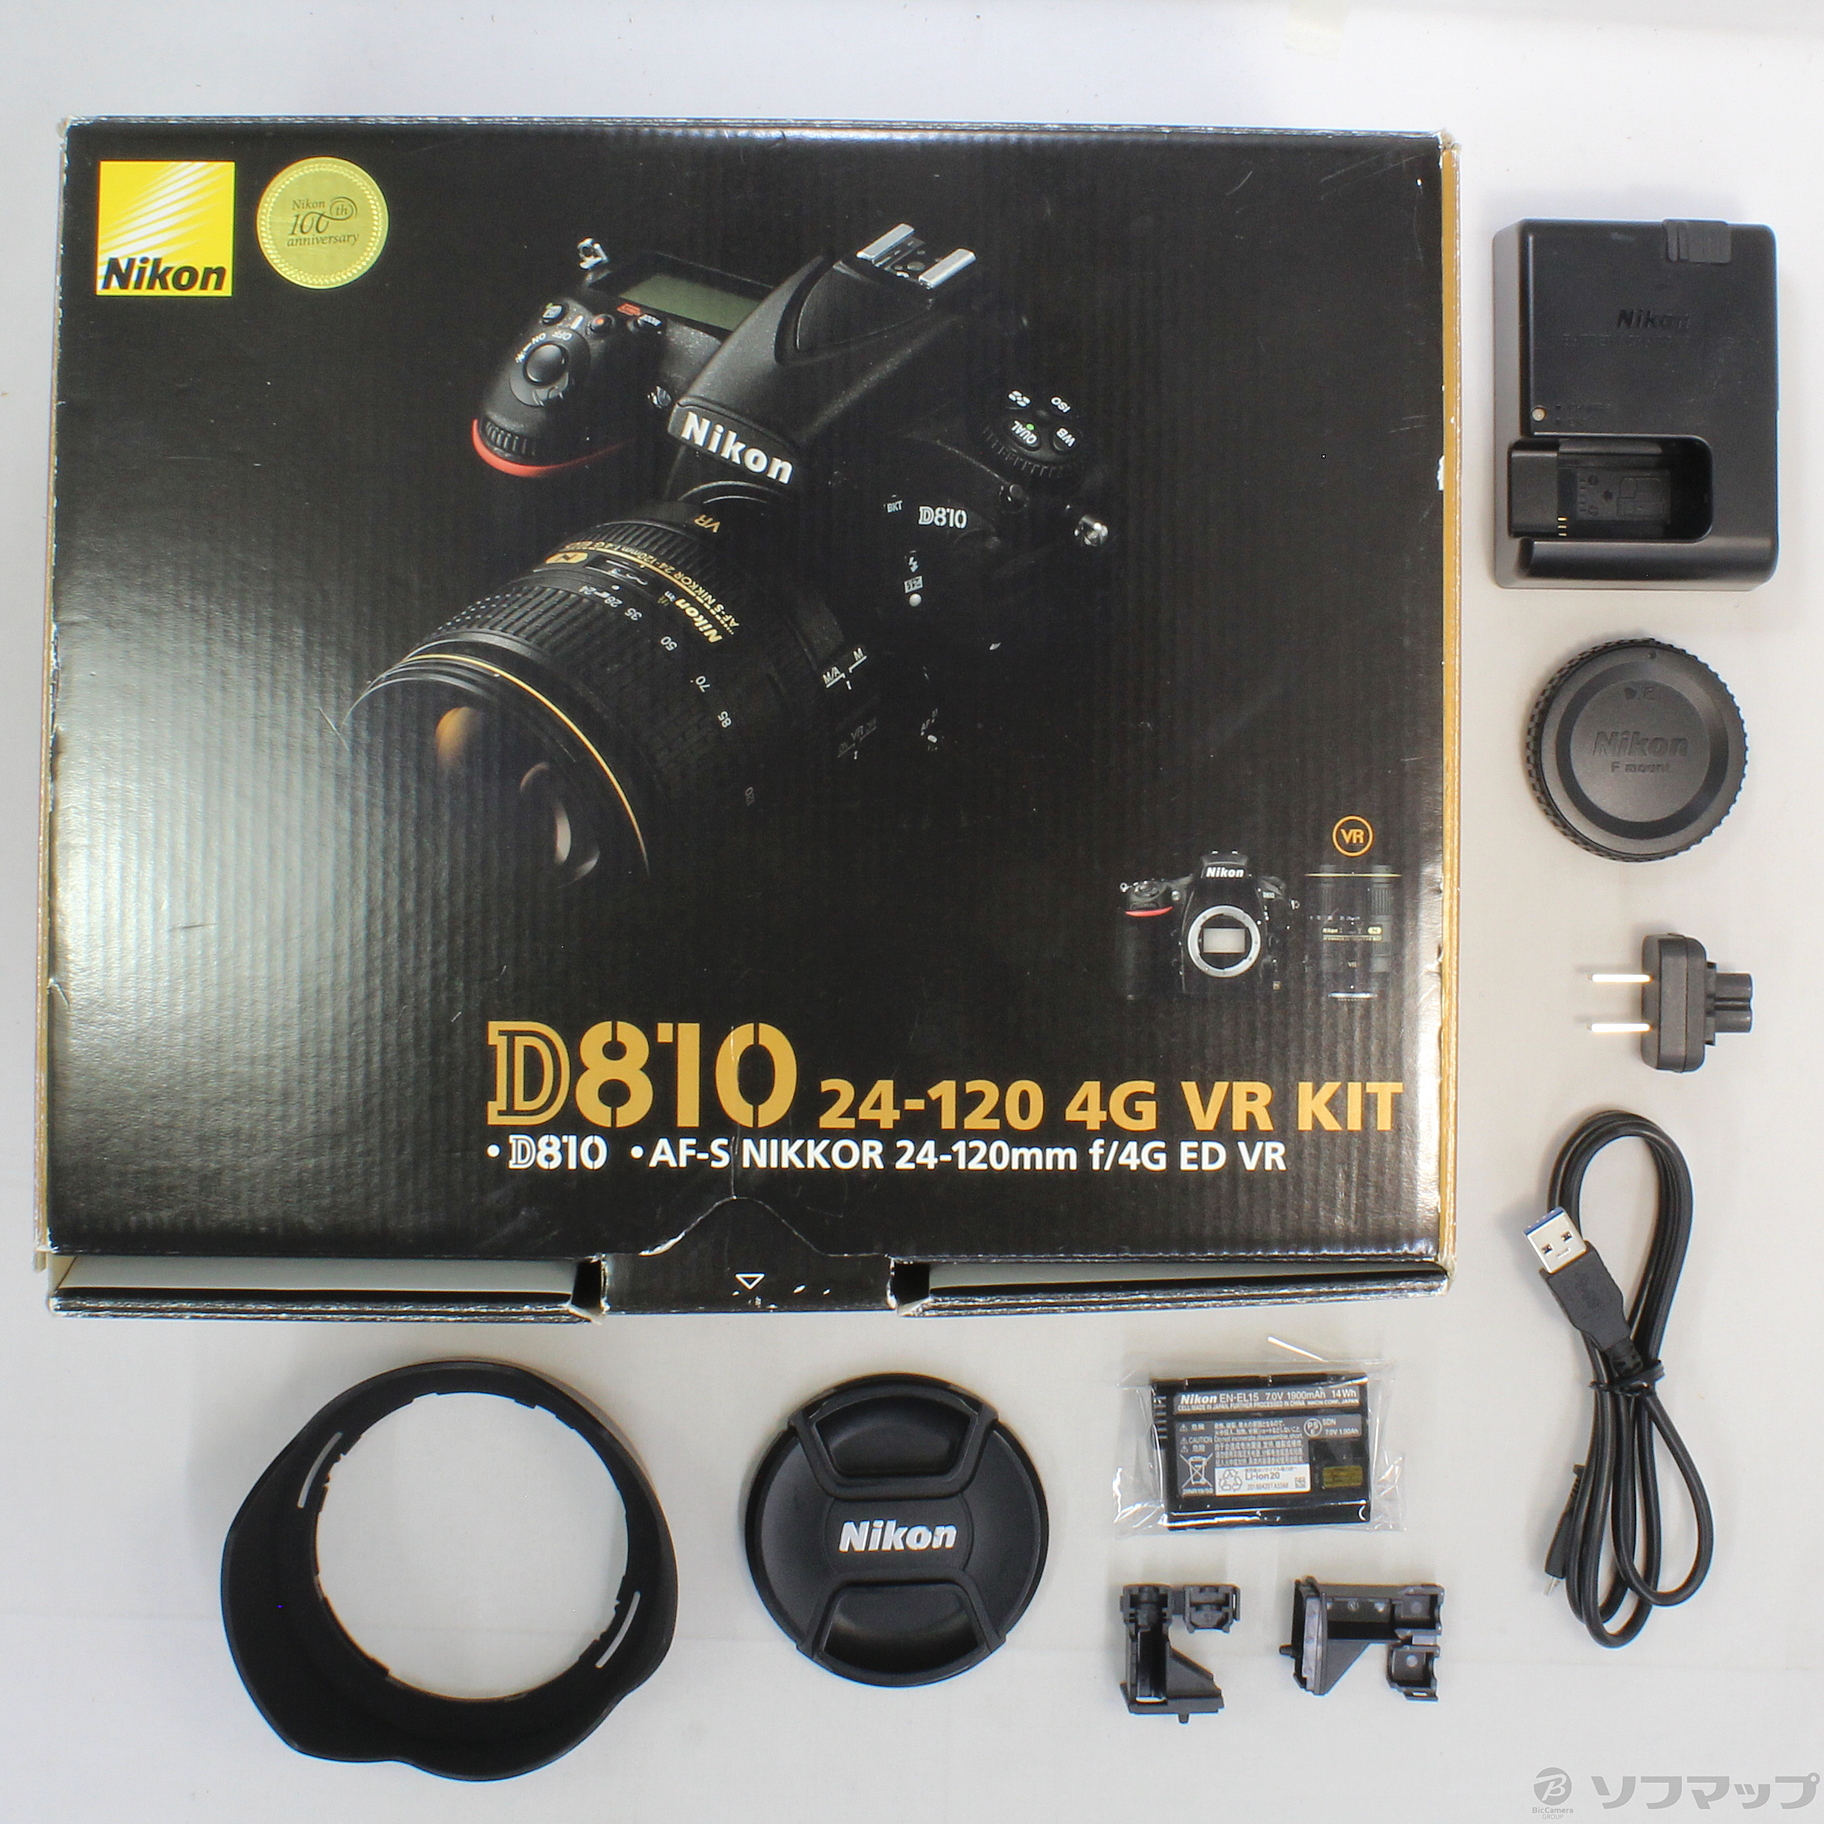 おいくらをご希望でしょうかNIKON D810 24-120 4G VR KIT - デジタルカメラ